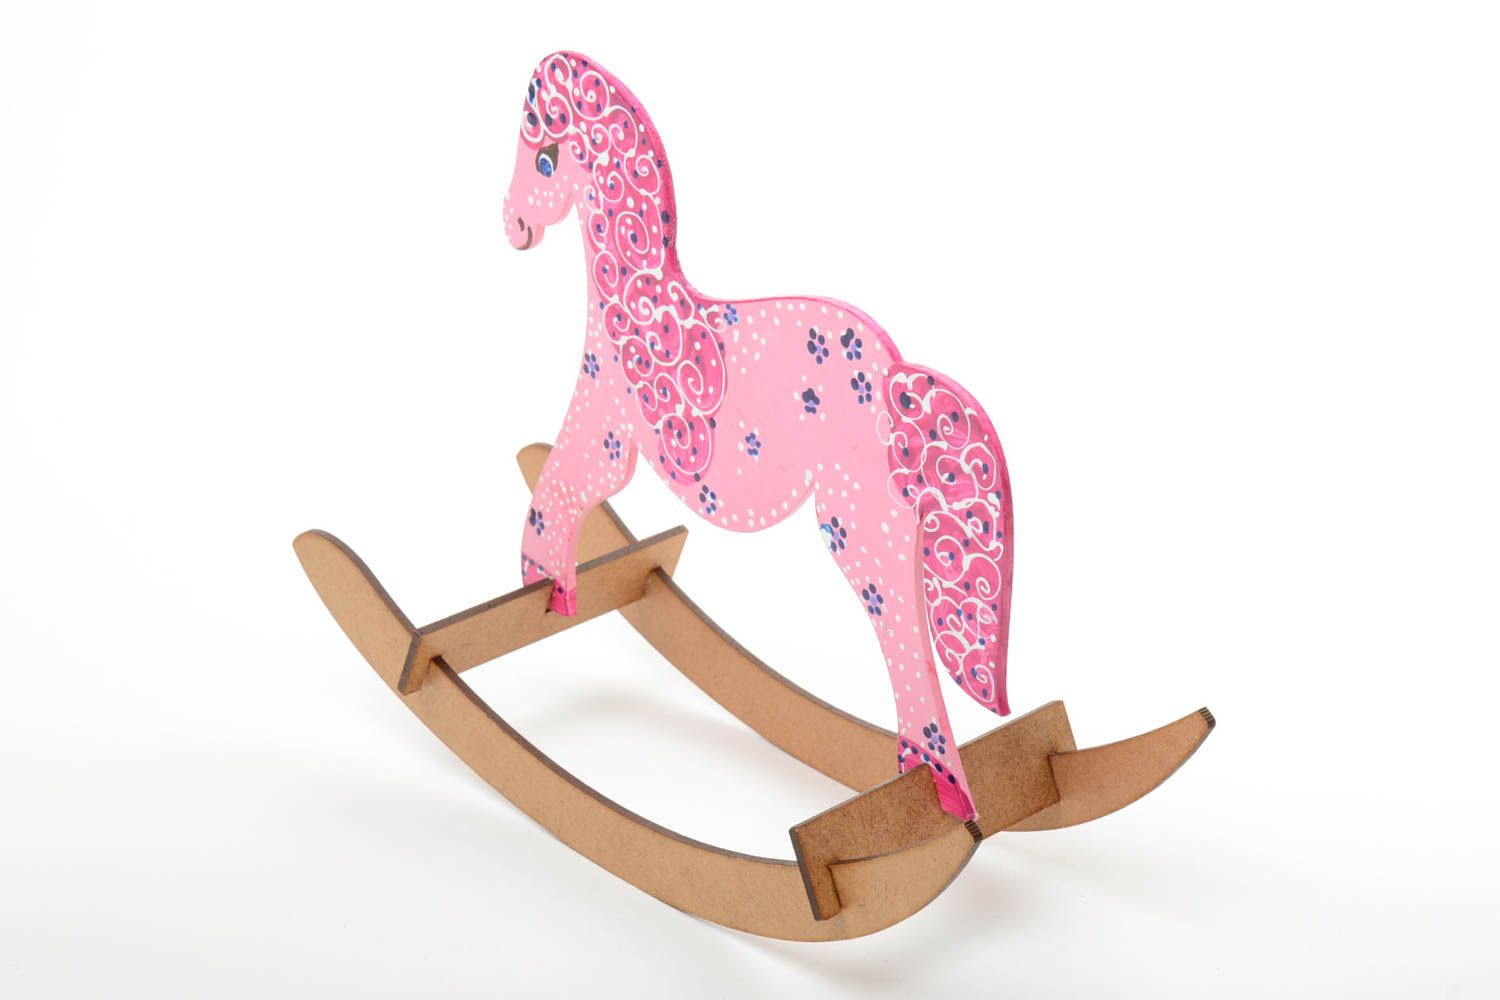 Игрушка лошадка ручной работы розового цвета качалка маленького размера детская фото 5